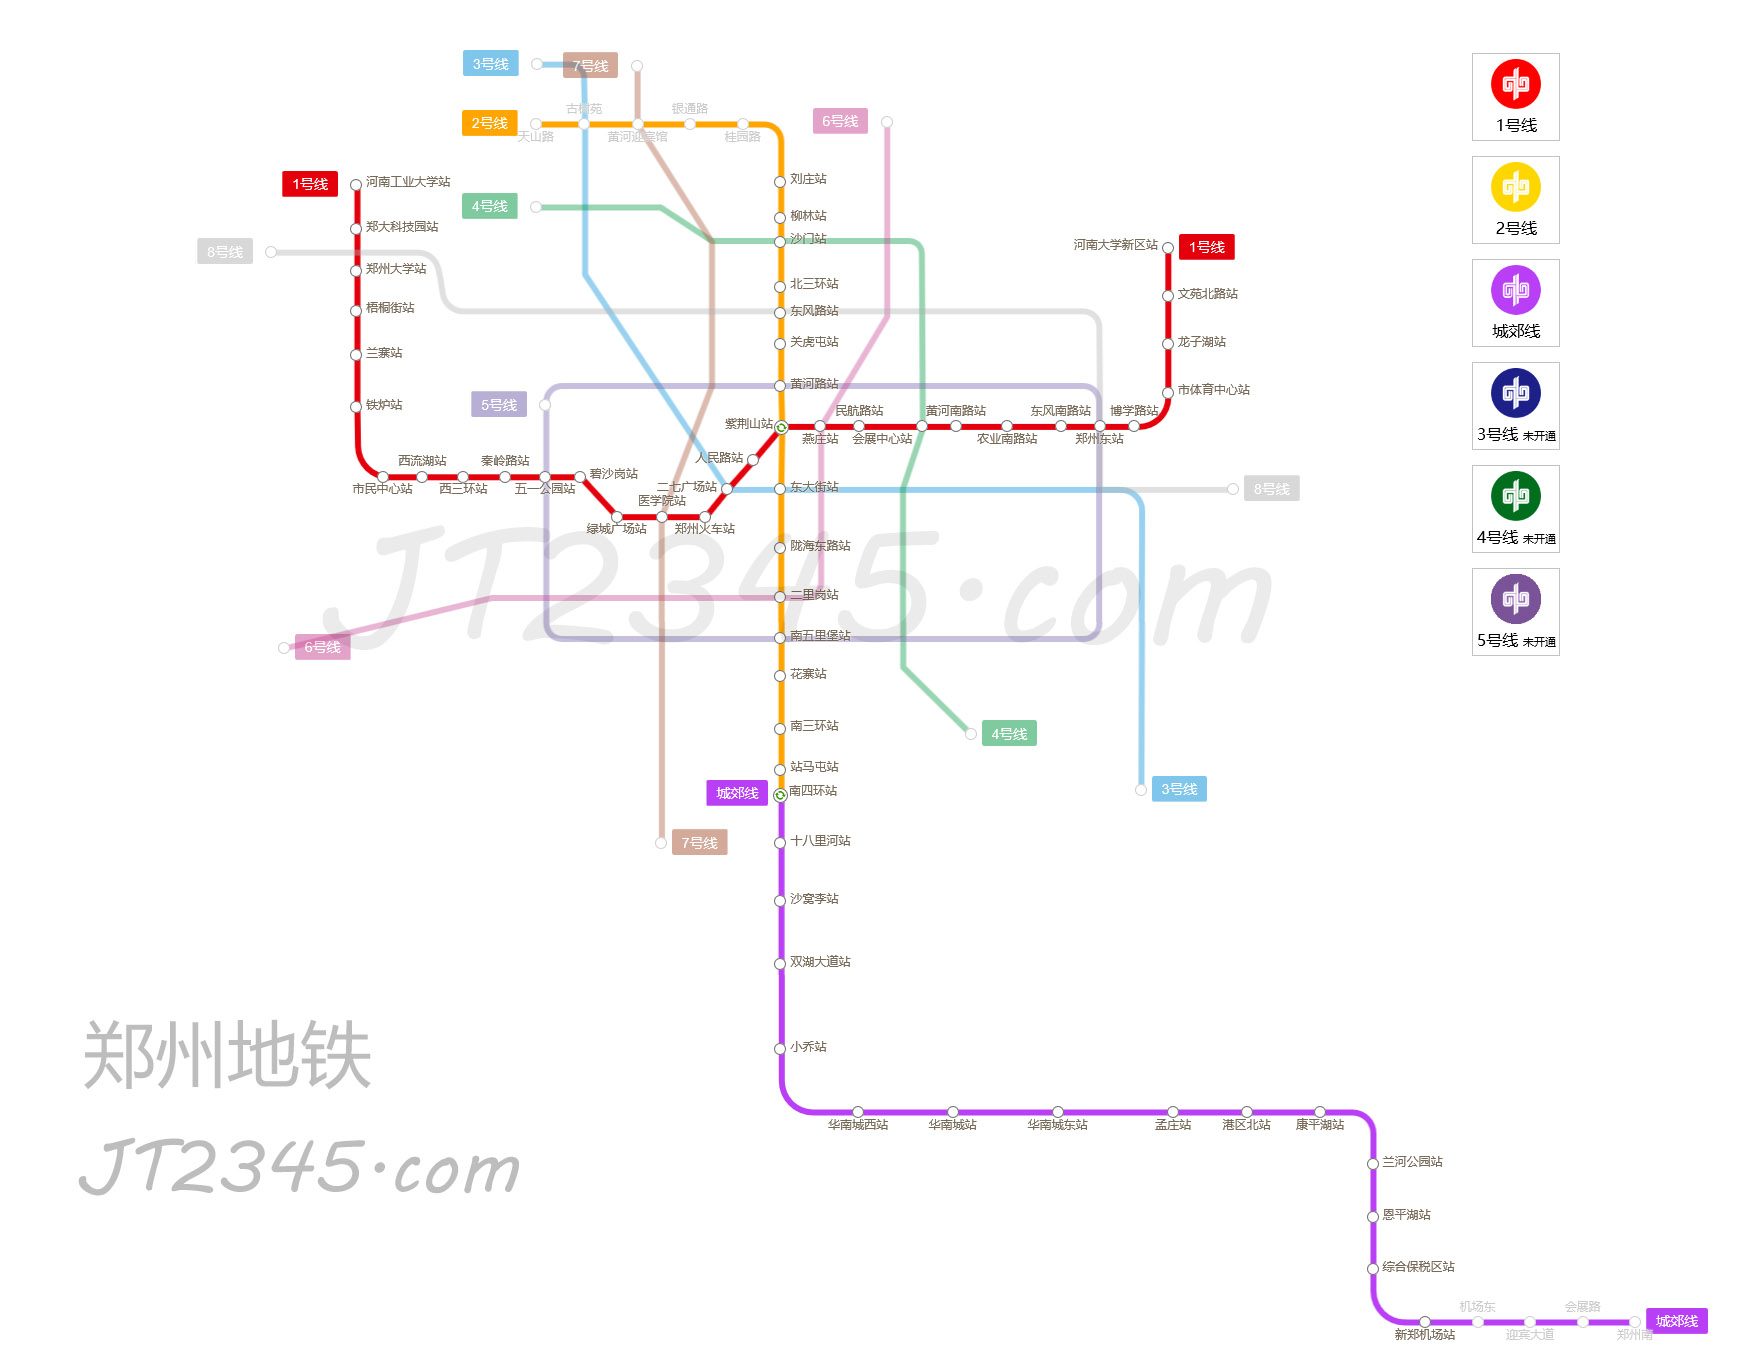 ↓郑州地铁线路图,点击查看大图↓